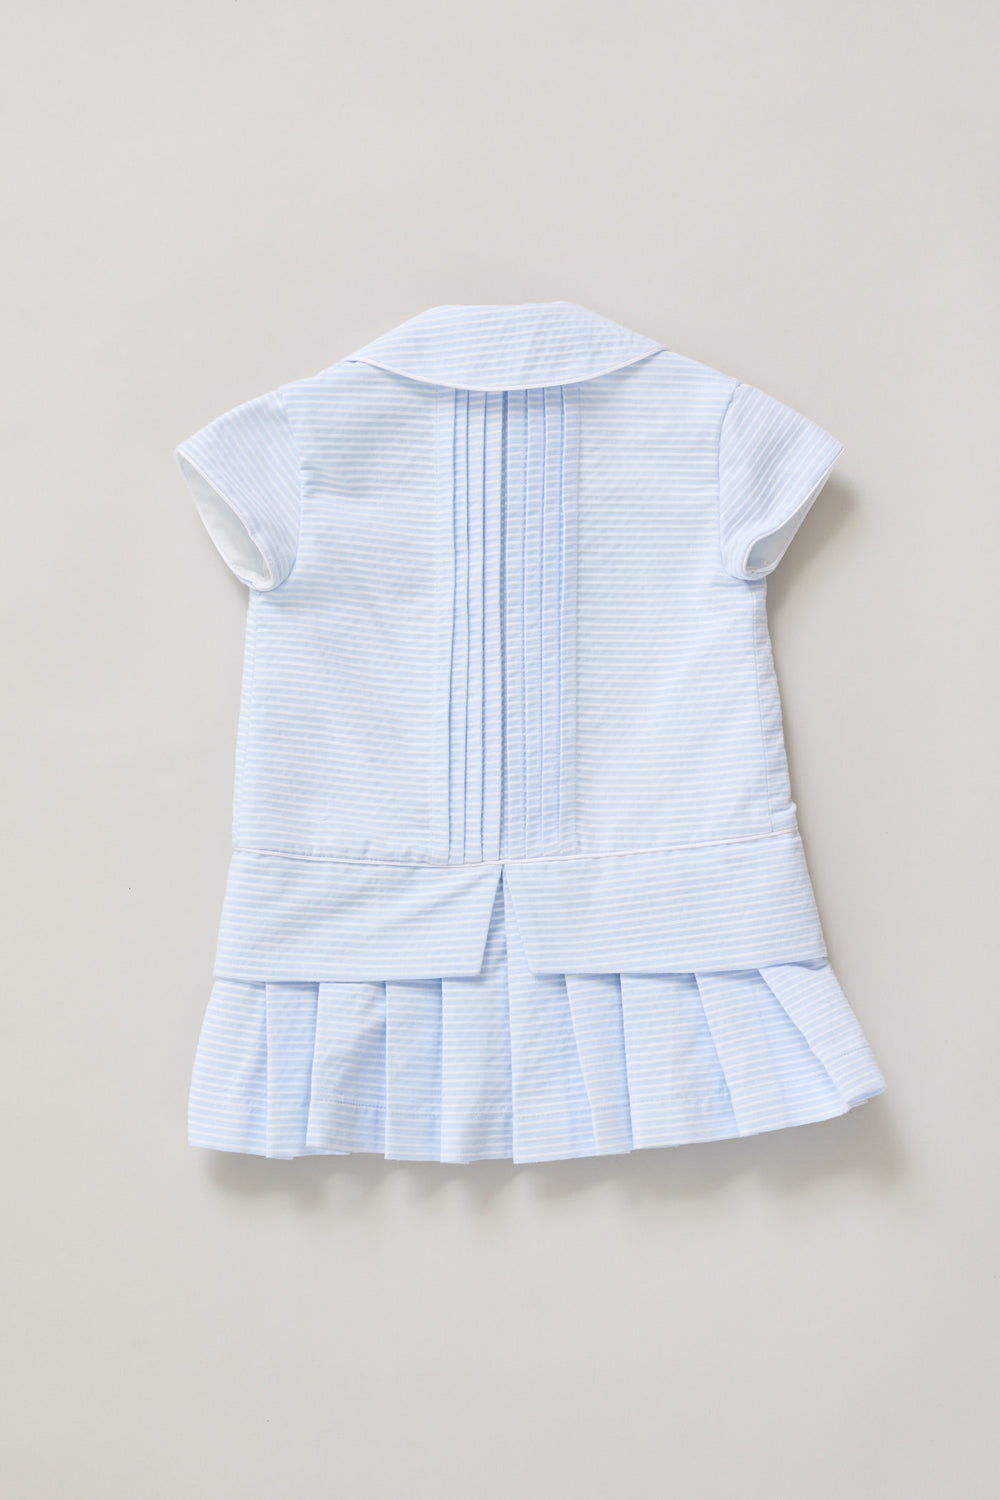 Baby Pretzel Dress in Sky Blue Stripe